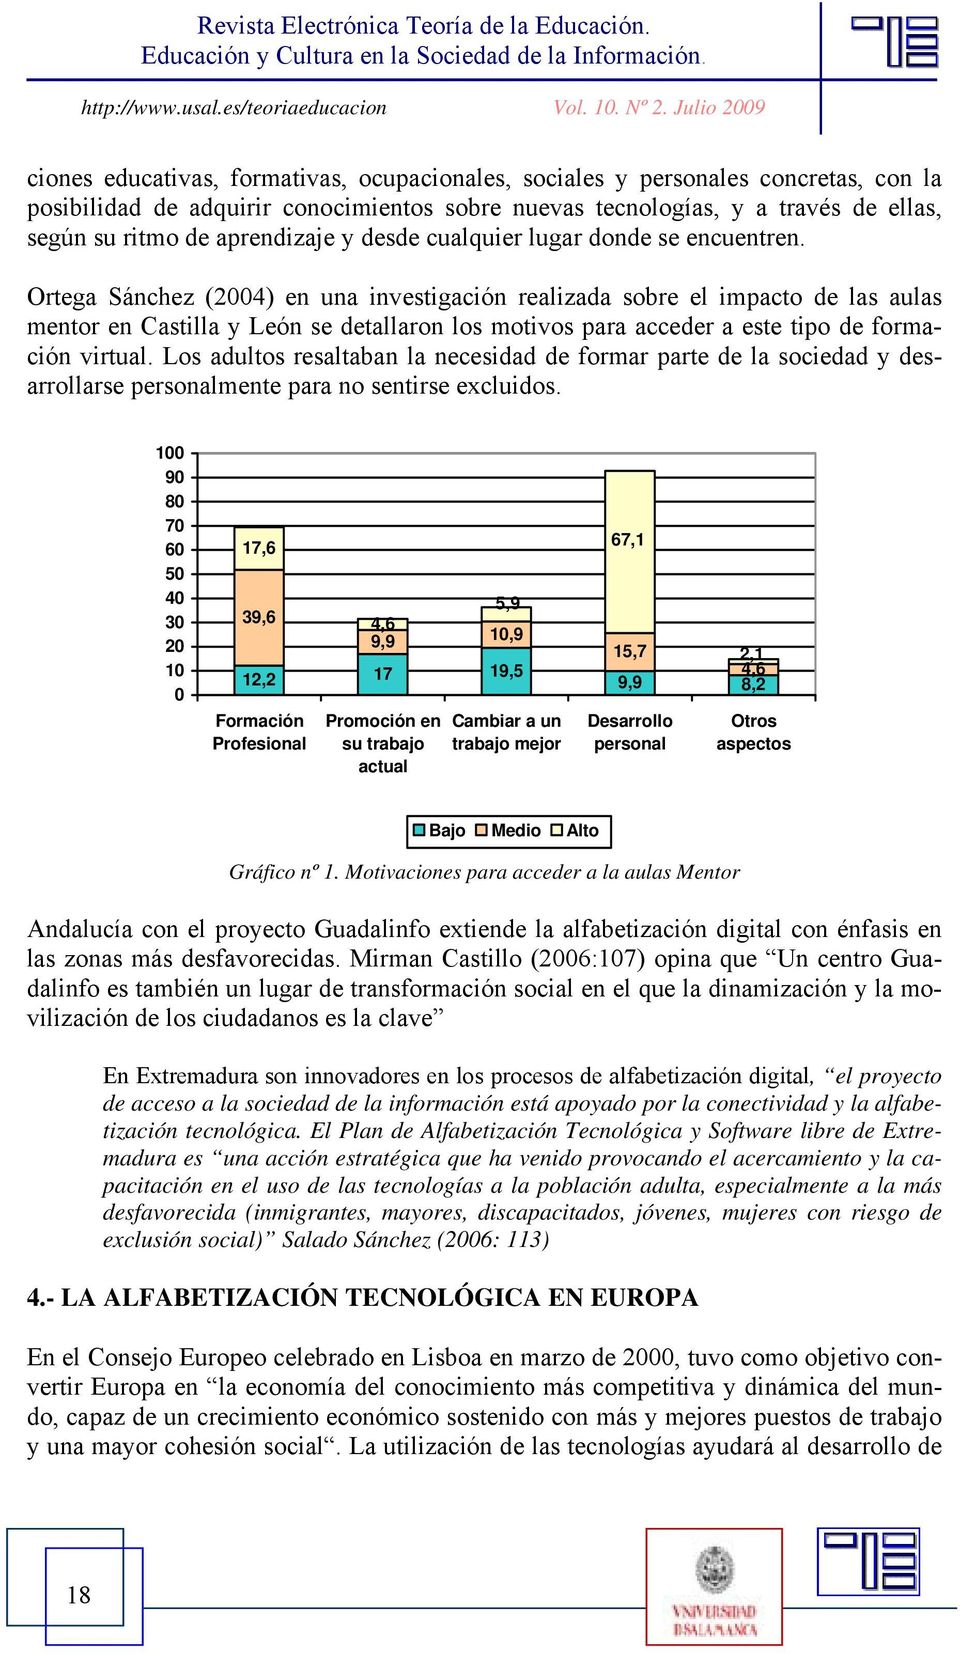 Ortega Sánchez (2004) en una investigación realizada sobre el impacto de las aulas mentor en Castilla y León se detallaron los motivos para acceder a este tipo de formación virtual.